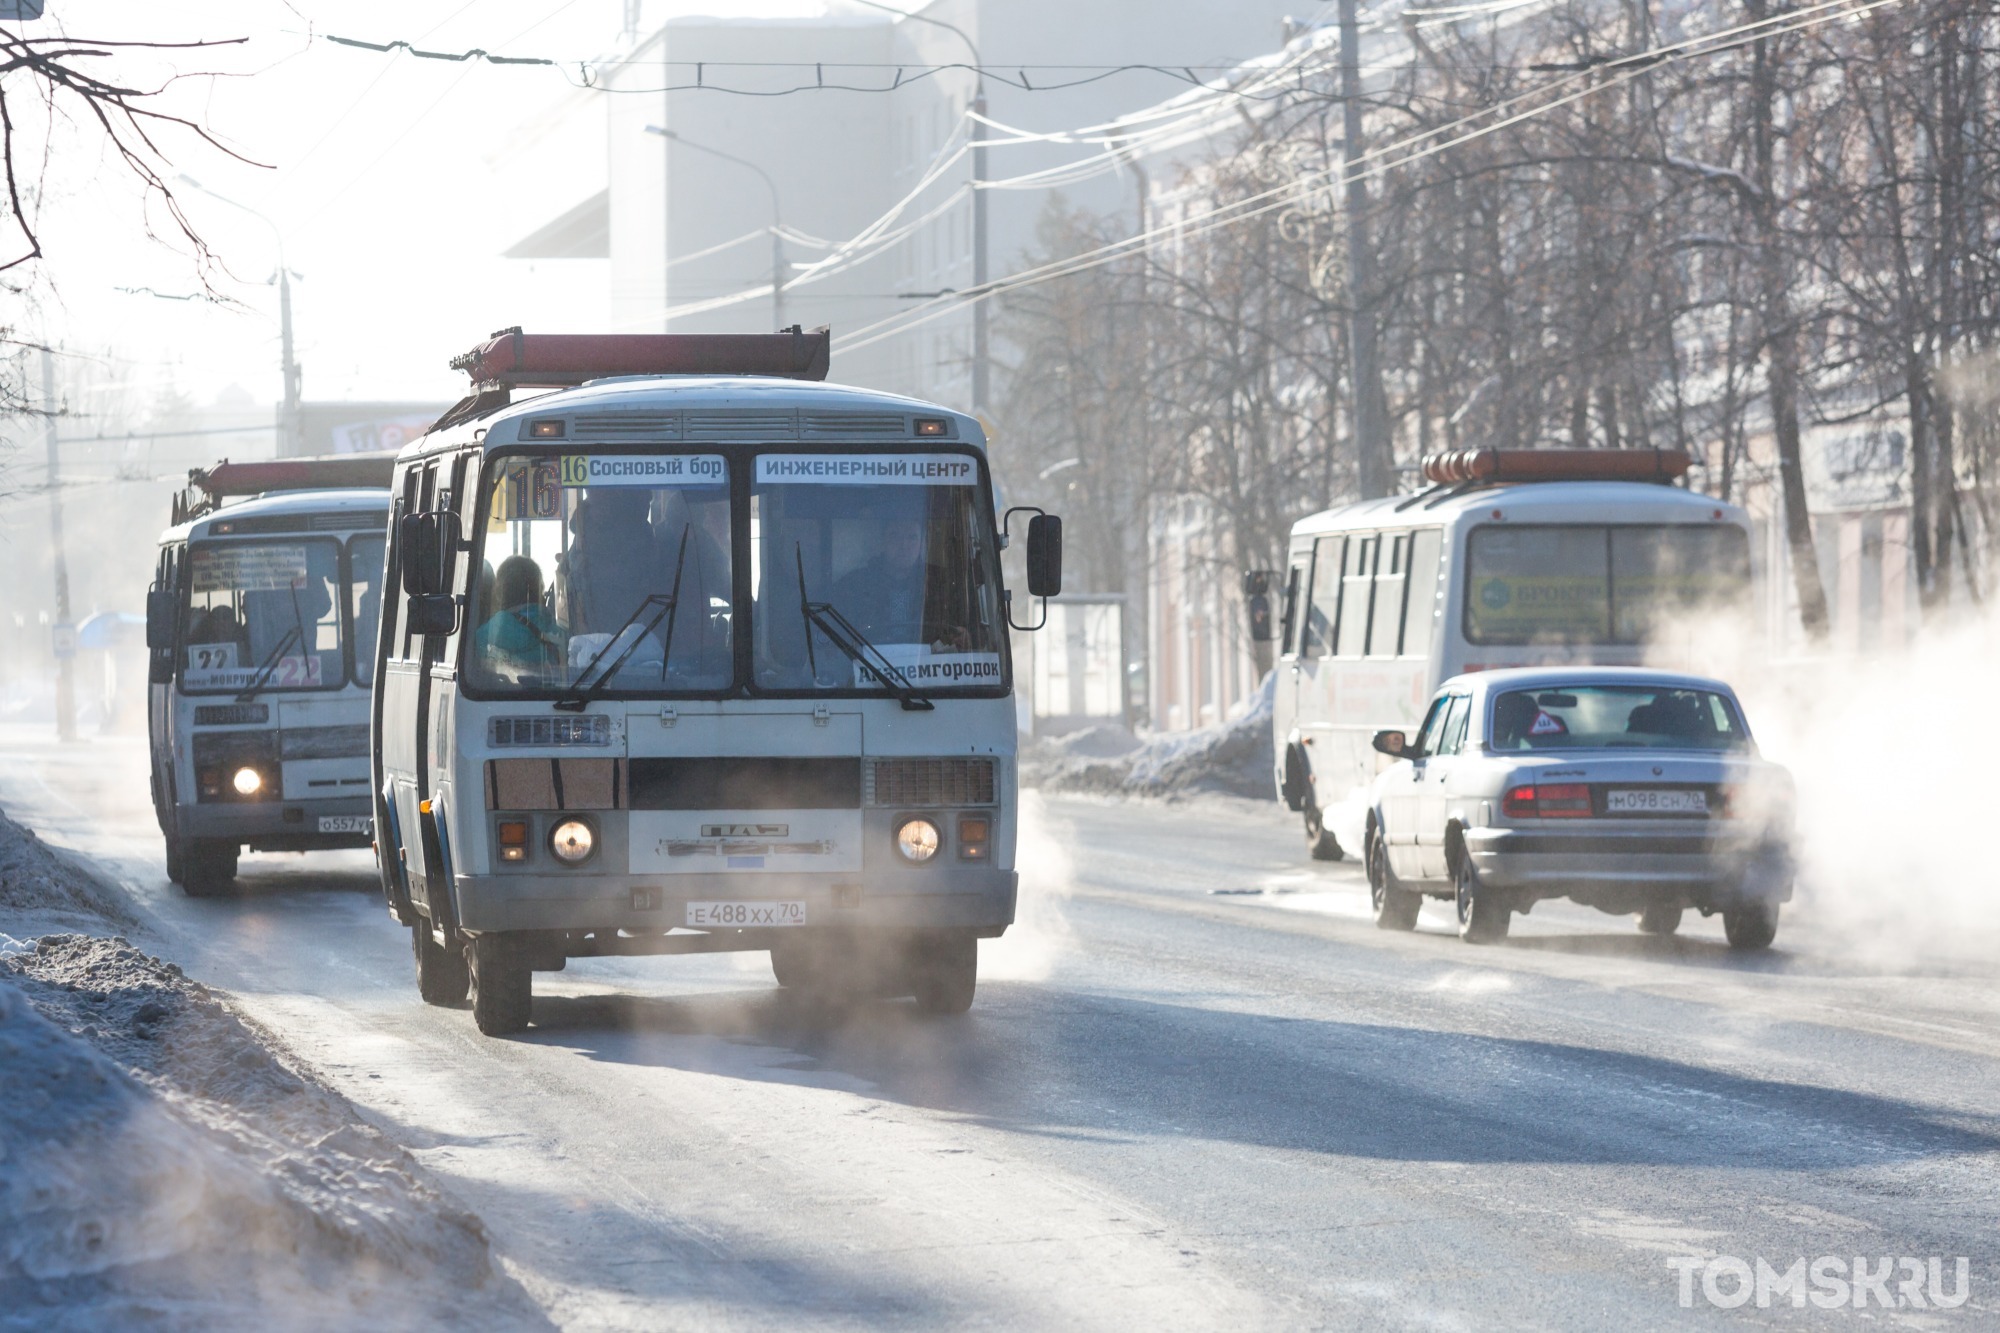 Мэрия Томска ведет наблюдение за наполняемостью автобусов в час-пик